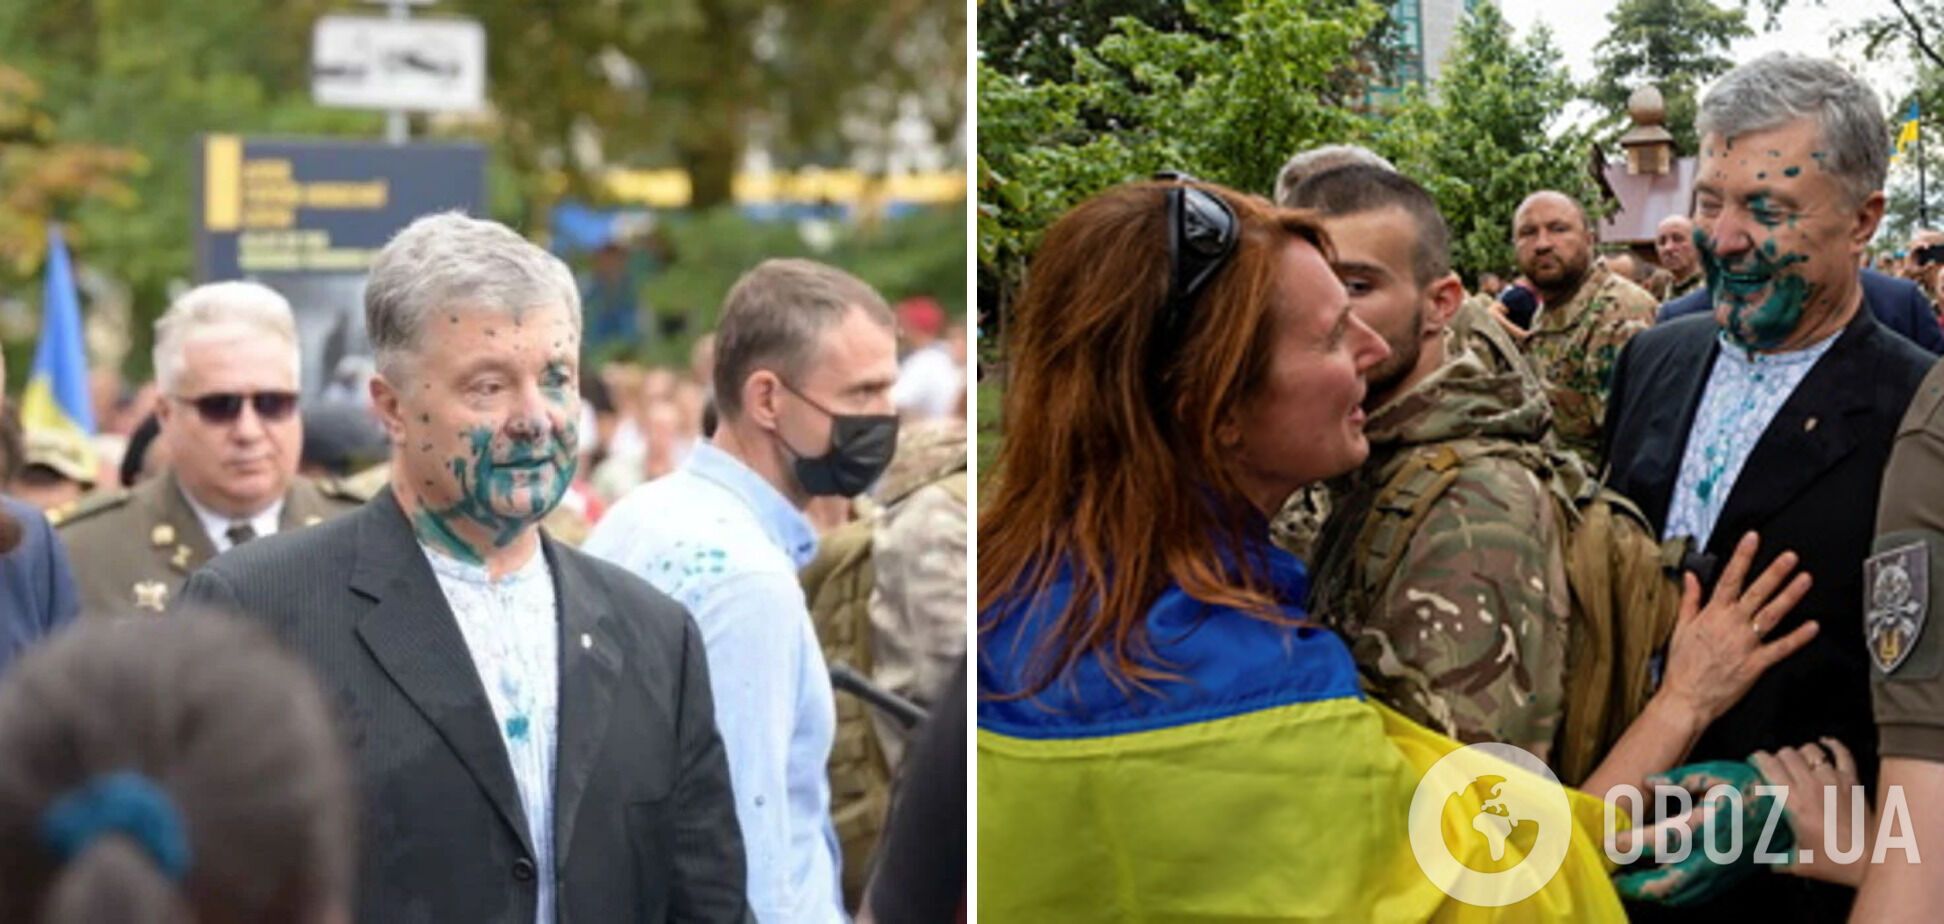 Порошенко облили зеленкой после Марша защитников 24 августа в Киеве